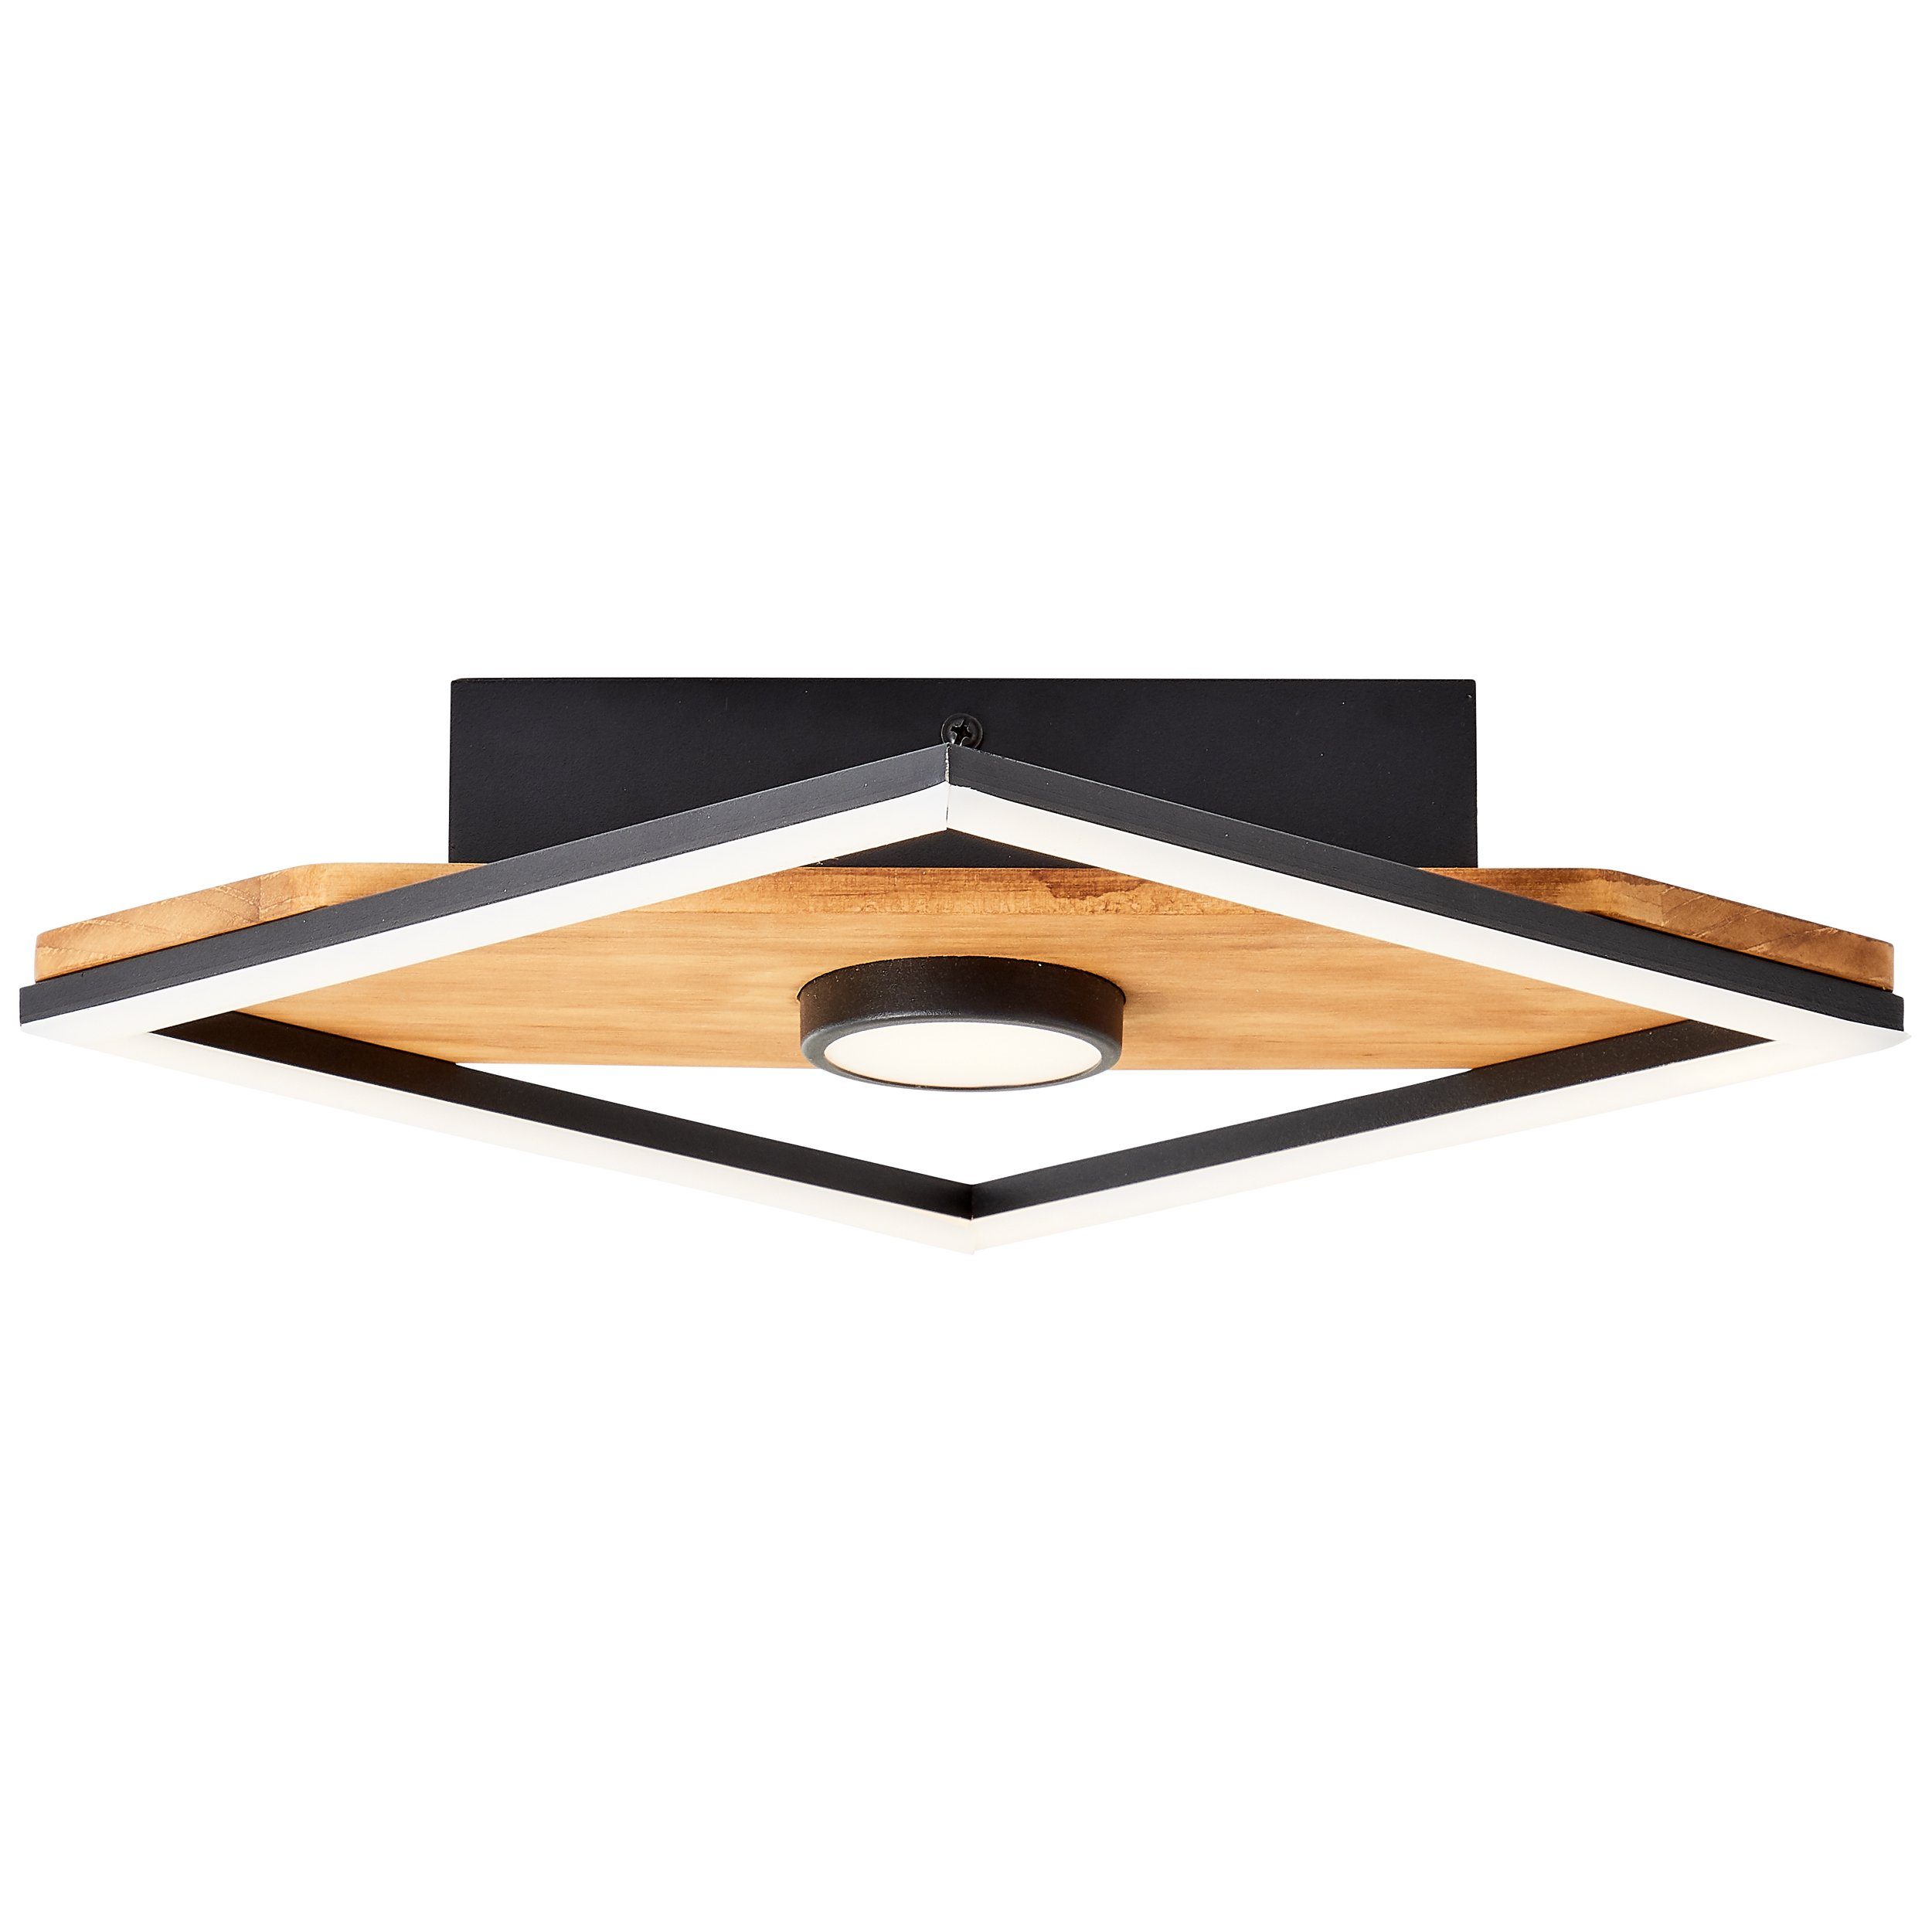 Woodbridge, Holz/Metall/Kunstst Woodbridge Deckenleuchte holz/schwarz, LED Brilliant 25x25cm Deckenleuchte